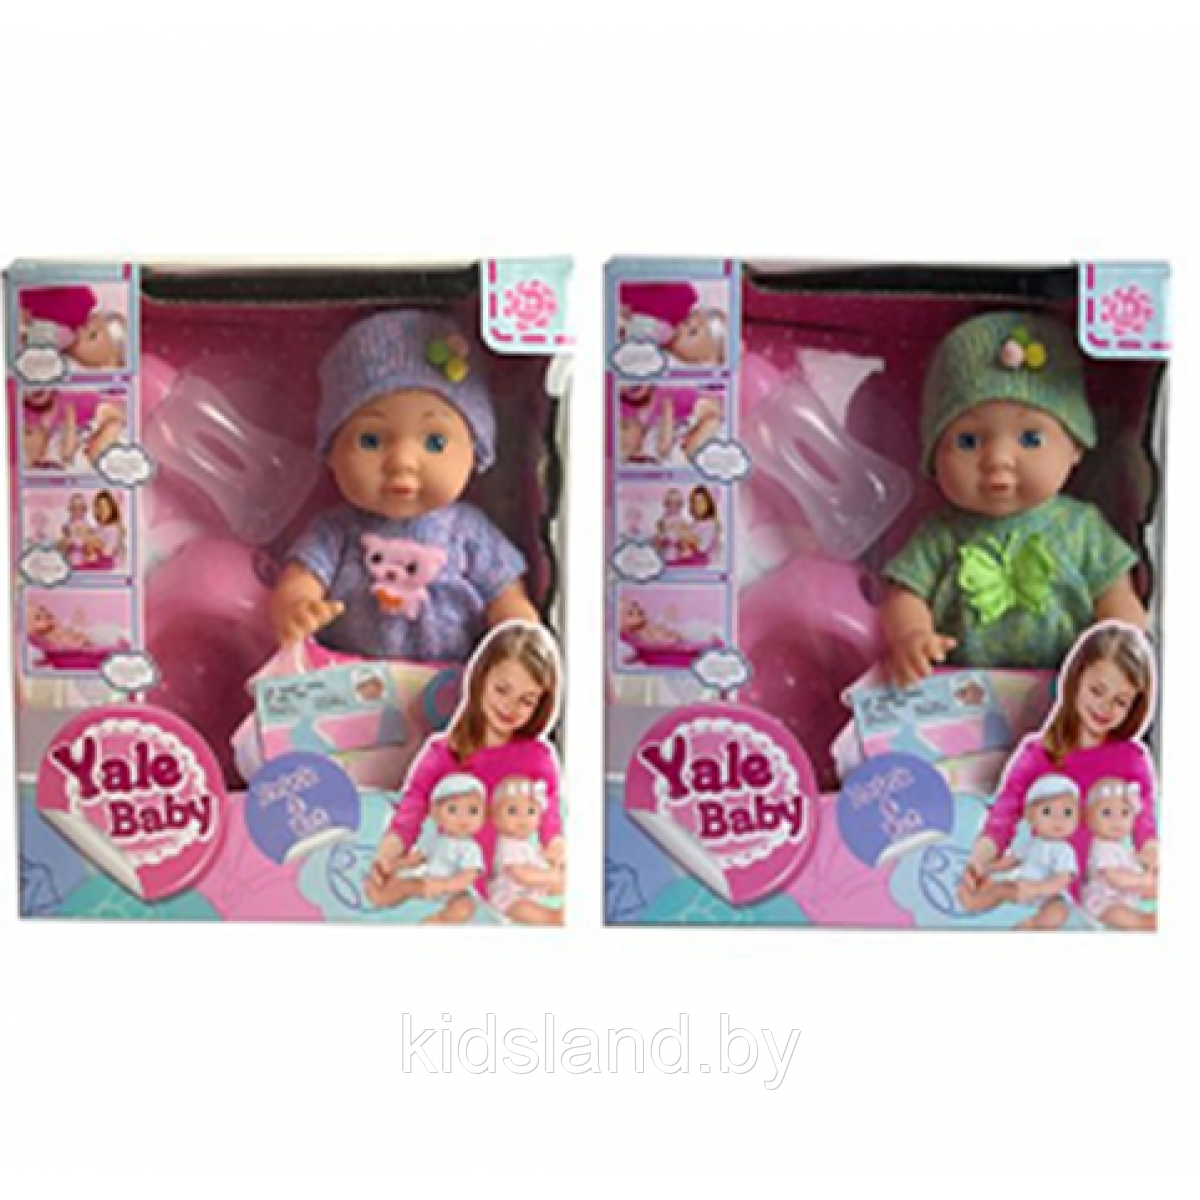 Кукла пупс "Yale Baby" , арт. YL1851D, фото 1